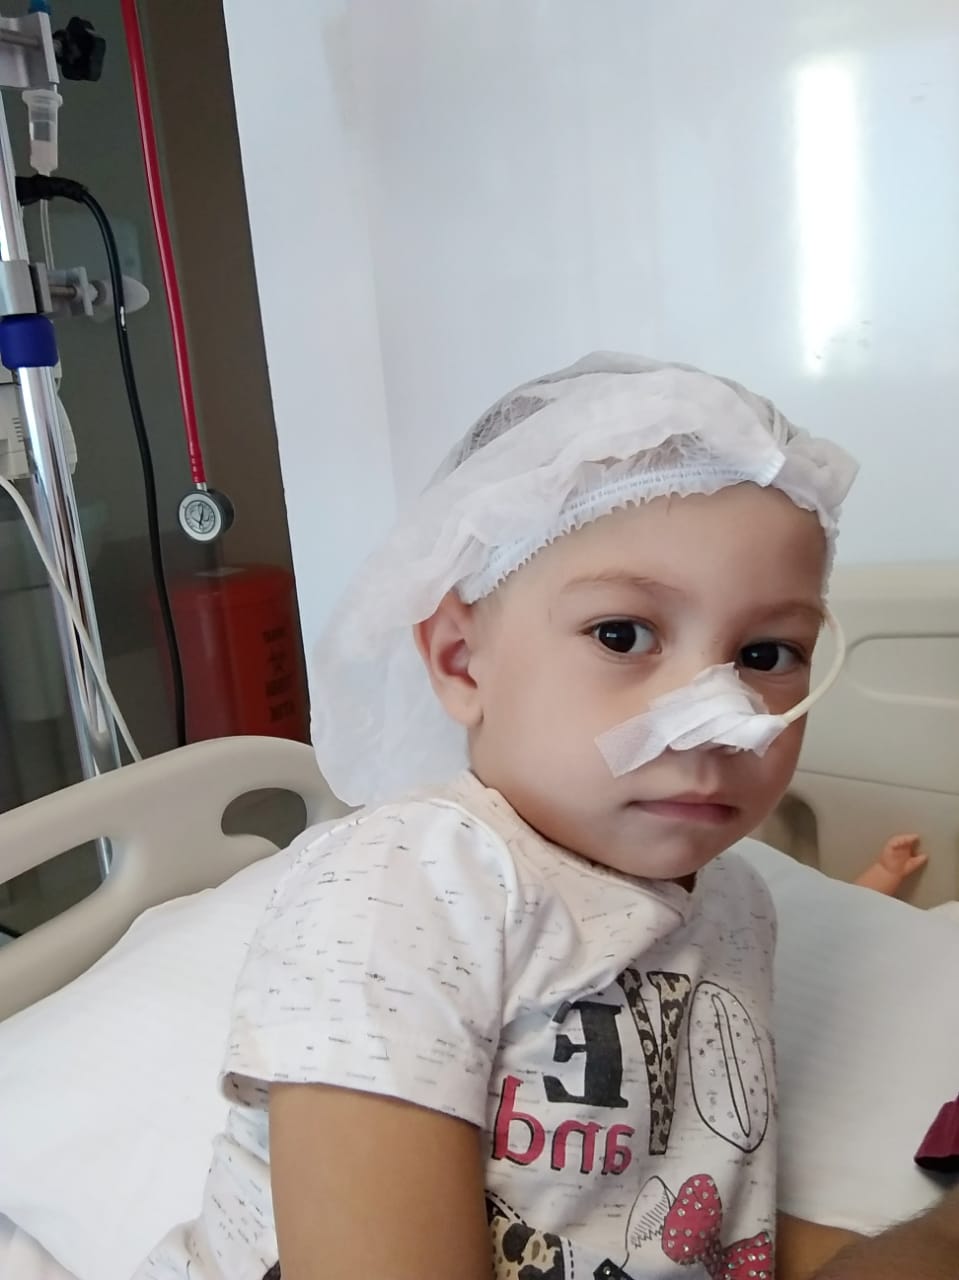 Чотирирічній Заріні Данов з Виноградова, яка страждає на вроджене генетичне захворювання – таласемію – зробили операцію по пересадці кісткового мозку в клініці у Стамбулі.

